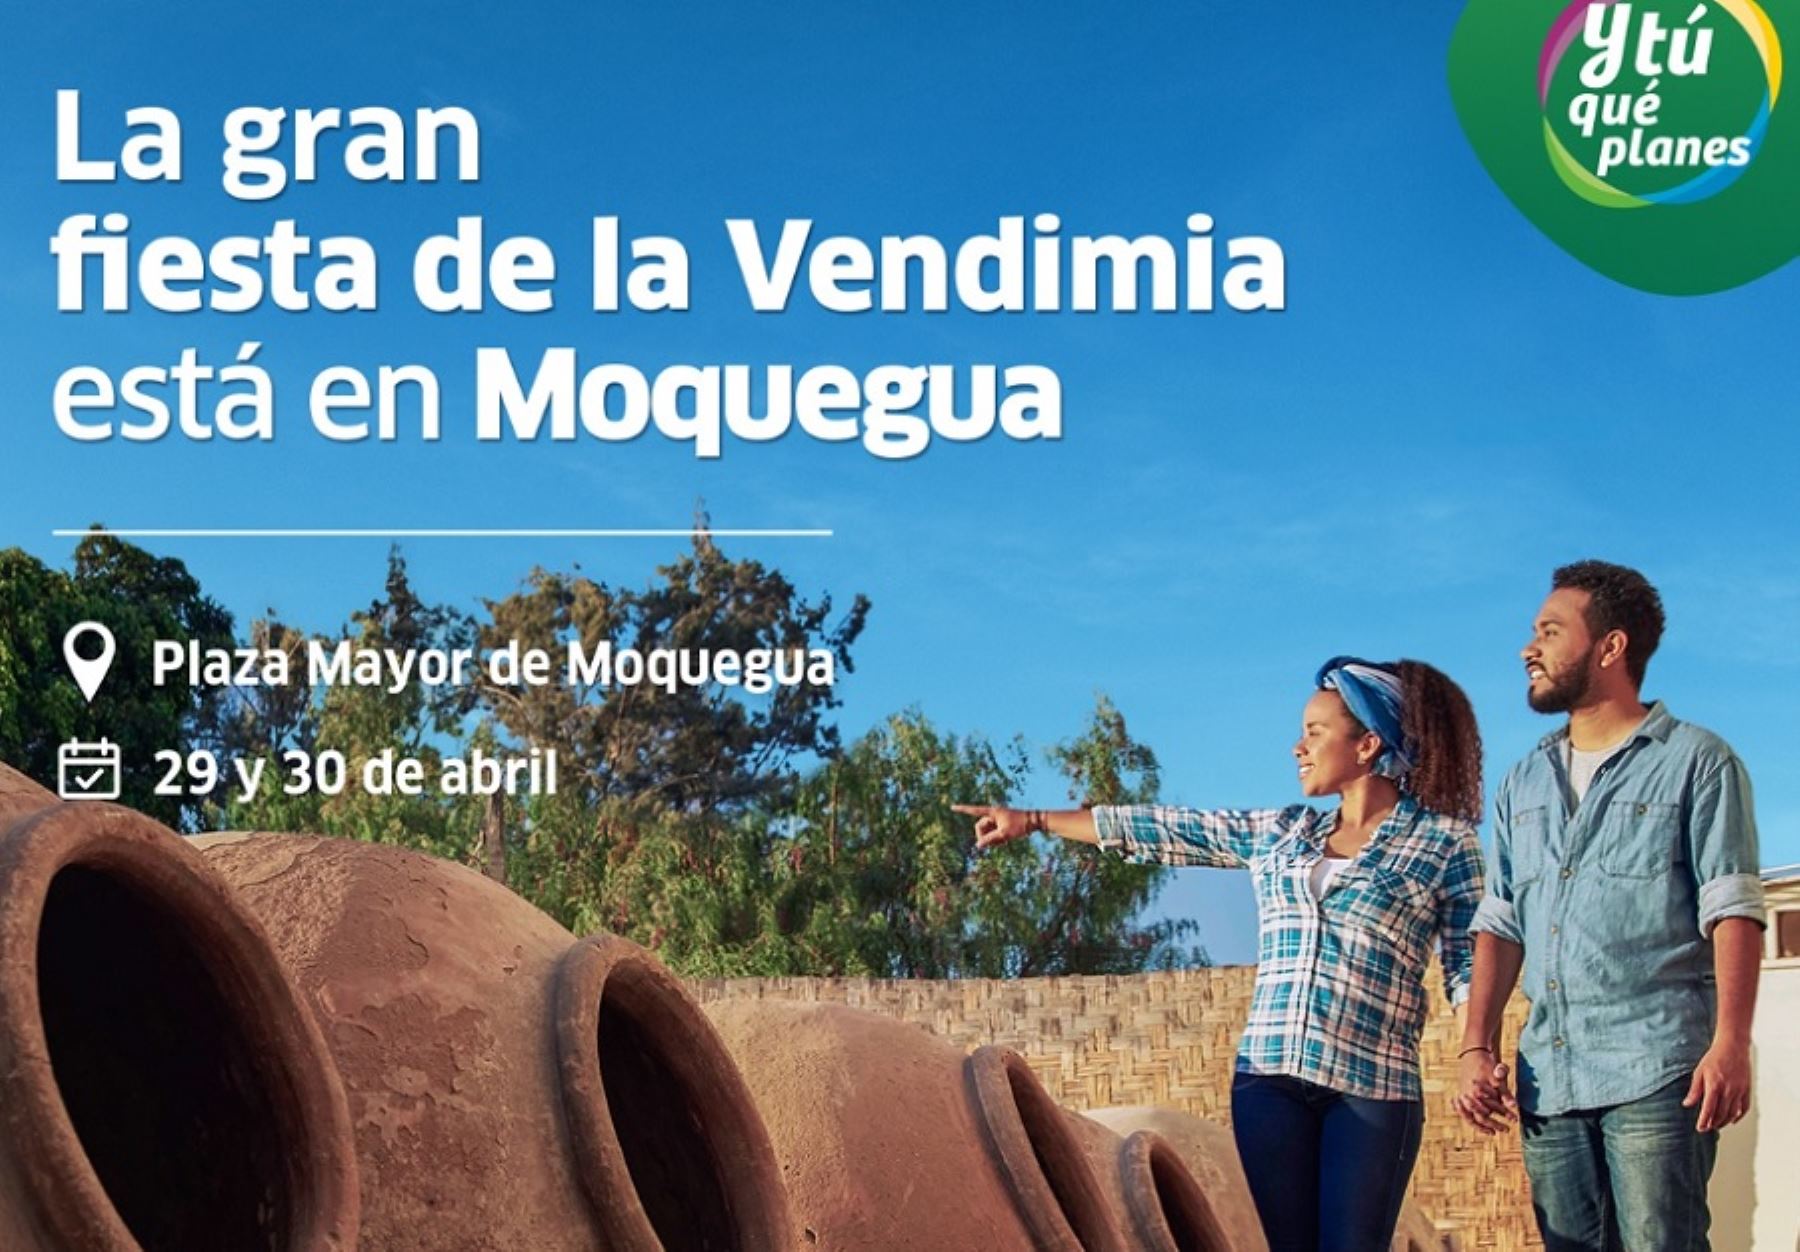 La región Moquegua se vestirá de gala y recibirá a los visitantes con sus mejores vinos, piscos, gastronomía, entre otros notables atractivos turísticos y su inconfundible hospitalidad en el XV Festival de la Vendimia Moqueguana 2023, a realizarse el próximo 29 y 30 de abril en este fascinante destino del sur peruano.